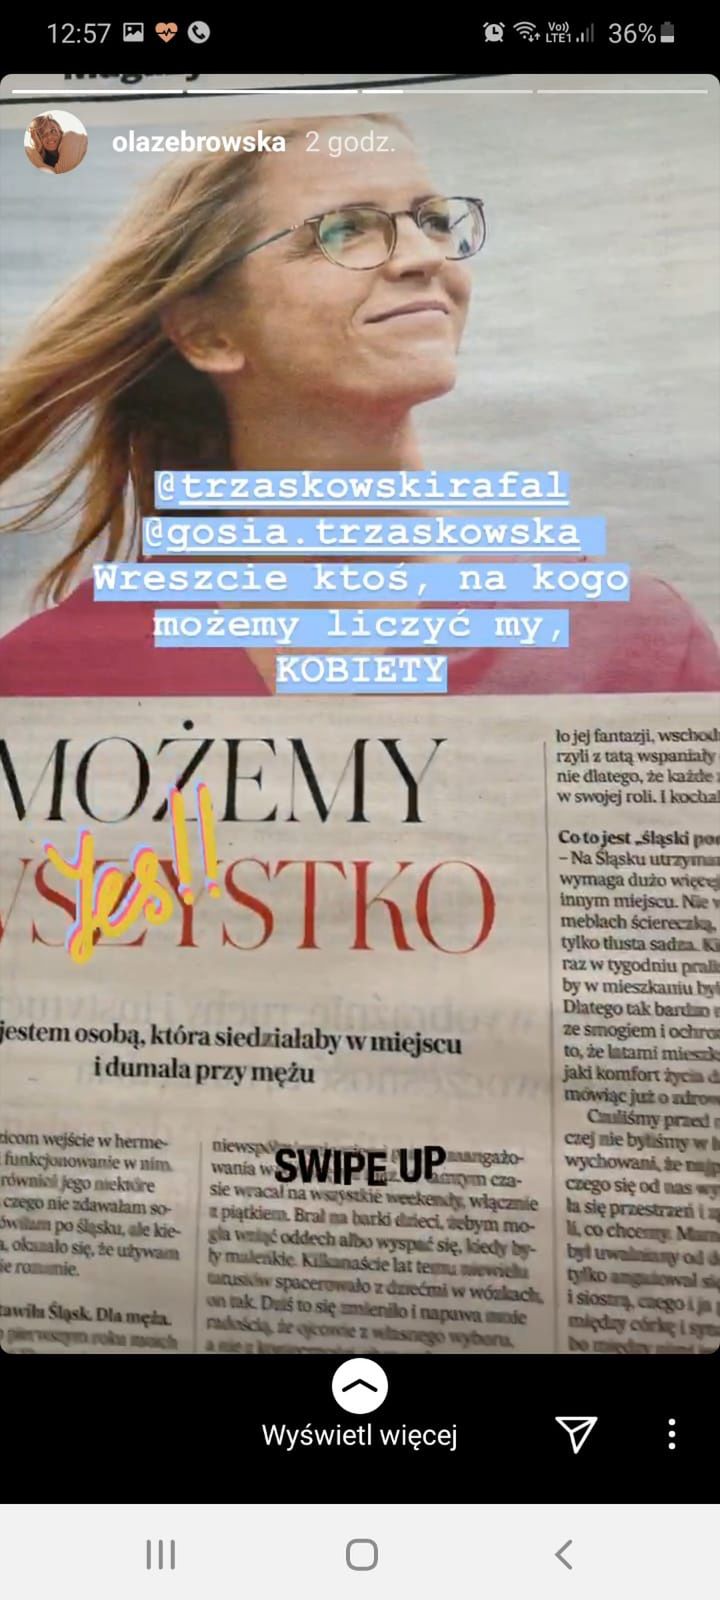 Ola Żebrowska popiera Rafała Trzaskowskiego i jego żonę